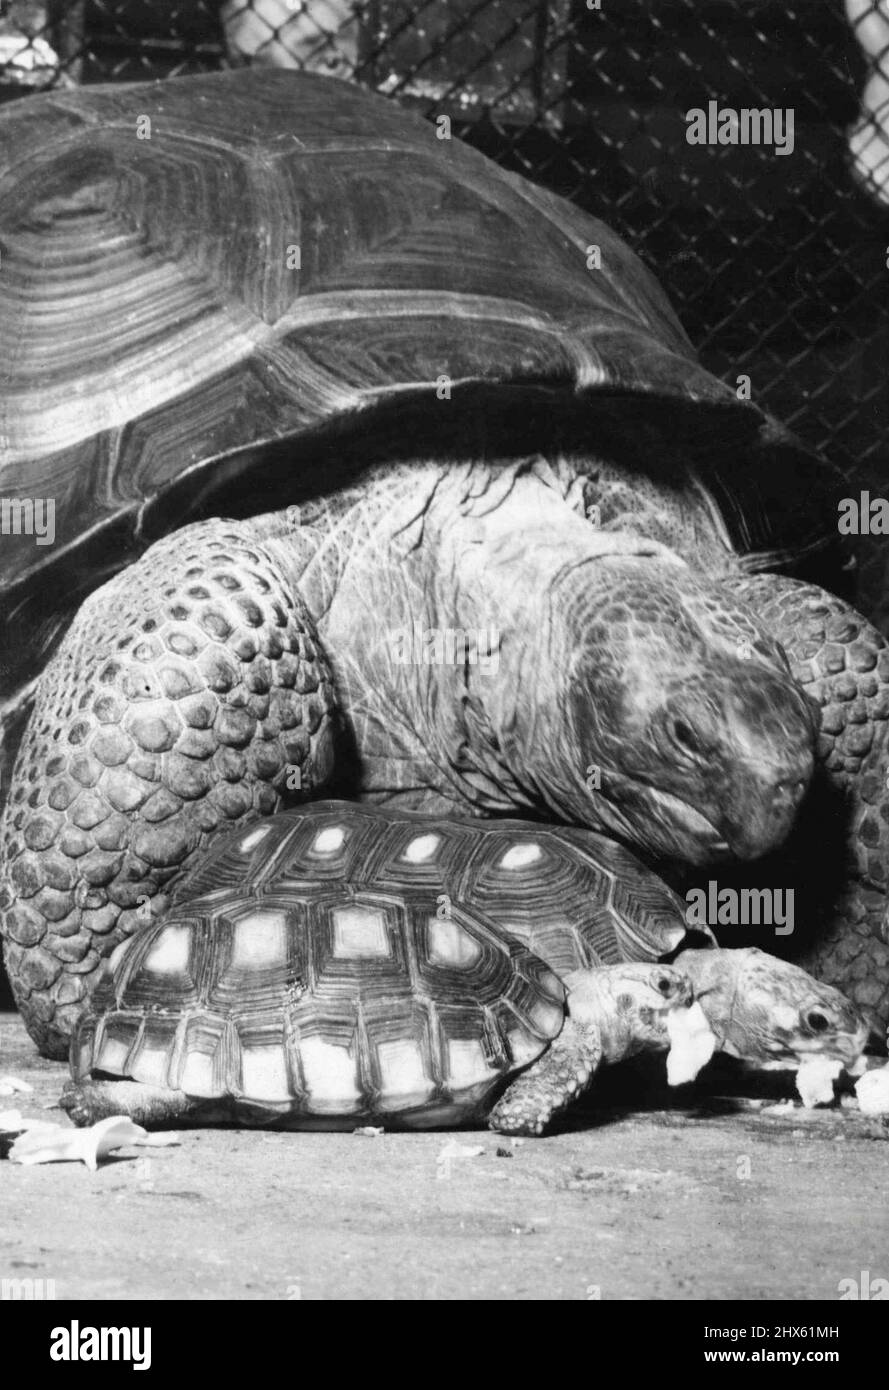 Le père Tortue était trop lent -- sous son énorme Shell, une tortue géante - 80 ans - regarde deux petites tortues brésiliennes comparativement jeunes couper devant lui pendant ***** heure. La tortue d'un vieil homme semble se demander à quoi la jeune génération vient, avec ses mauvaises manières et ses coques aux couleurs vives. Cela utilise peu d'étude de la nature vient du zoo de Londres. 19 novembre 1938. (Photo par photo de presse associée). Banque D'Images